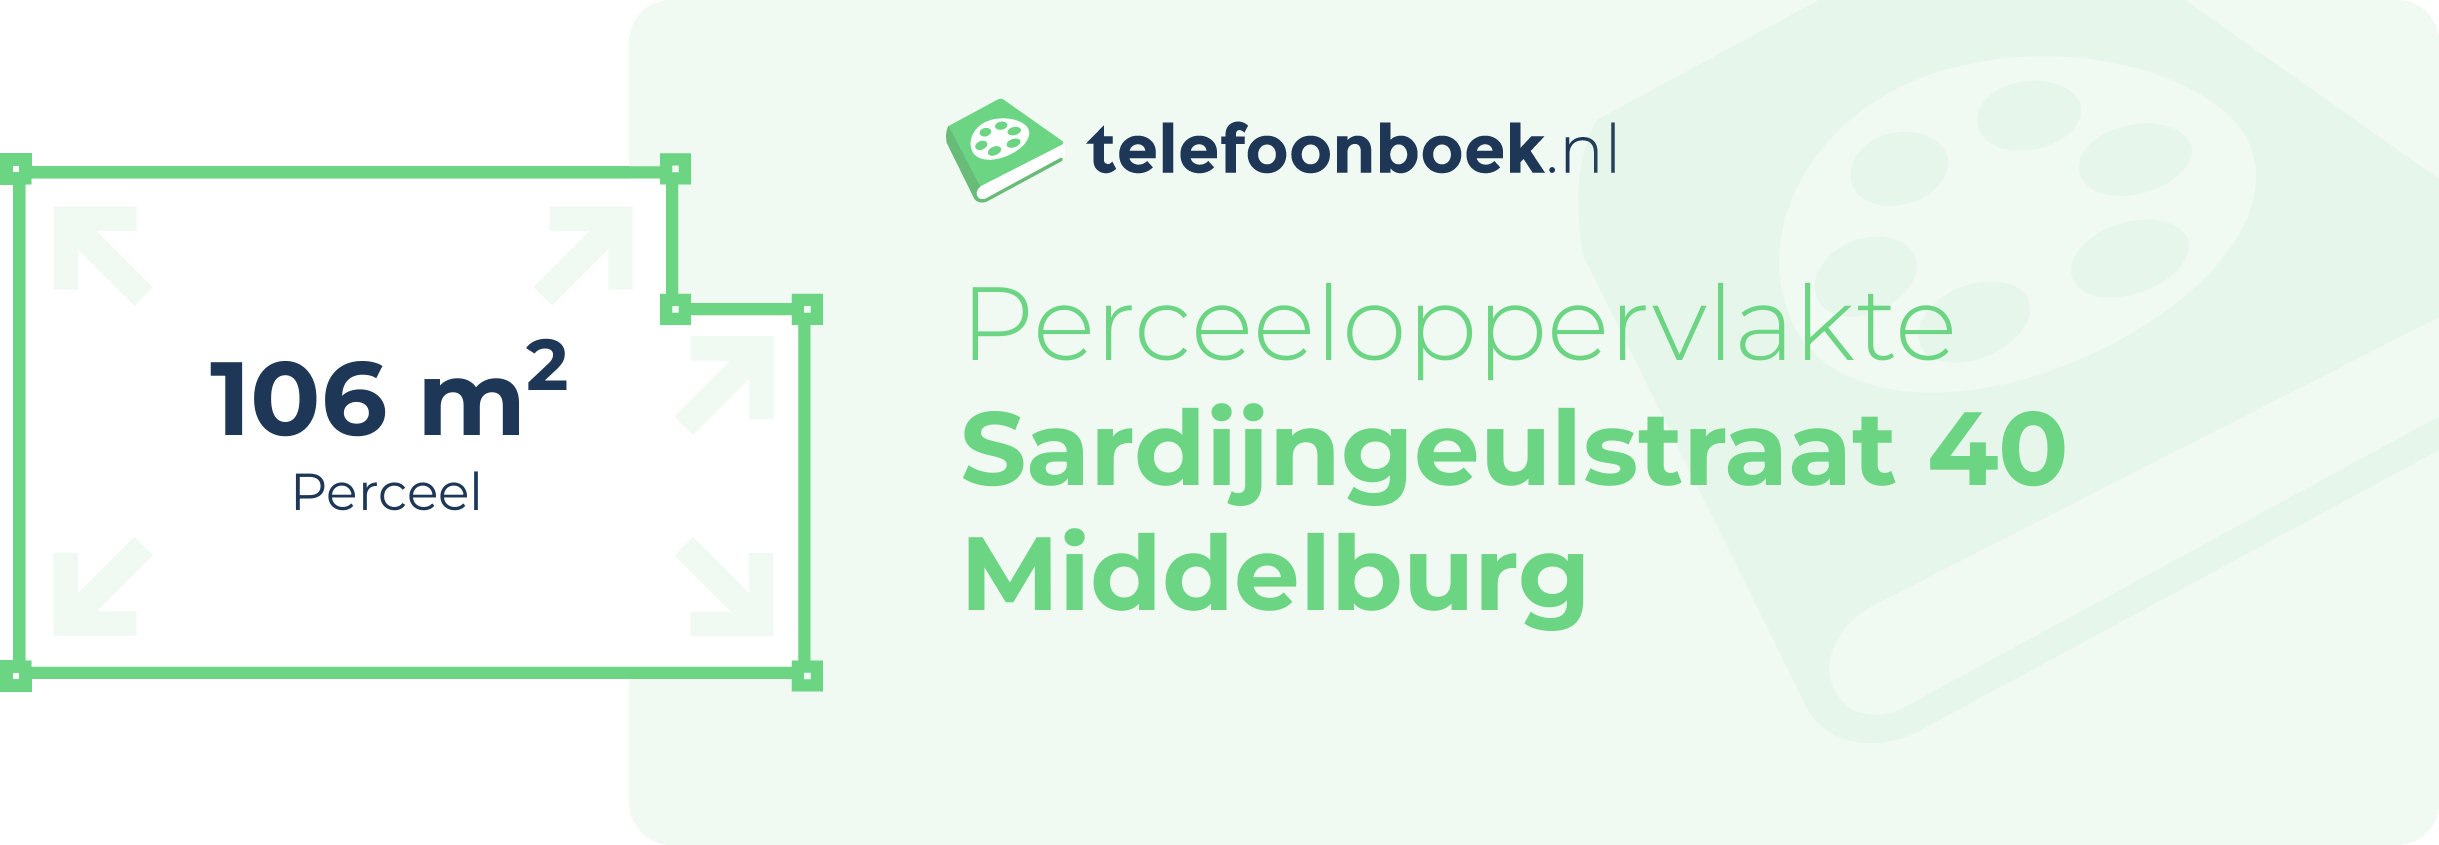 Perceeloppervlakte Sardijngeulstraat 40 Middelburg